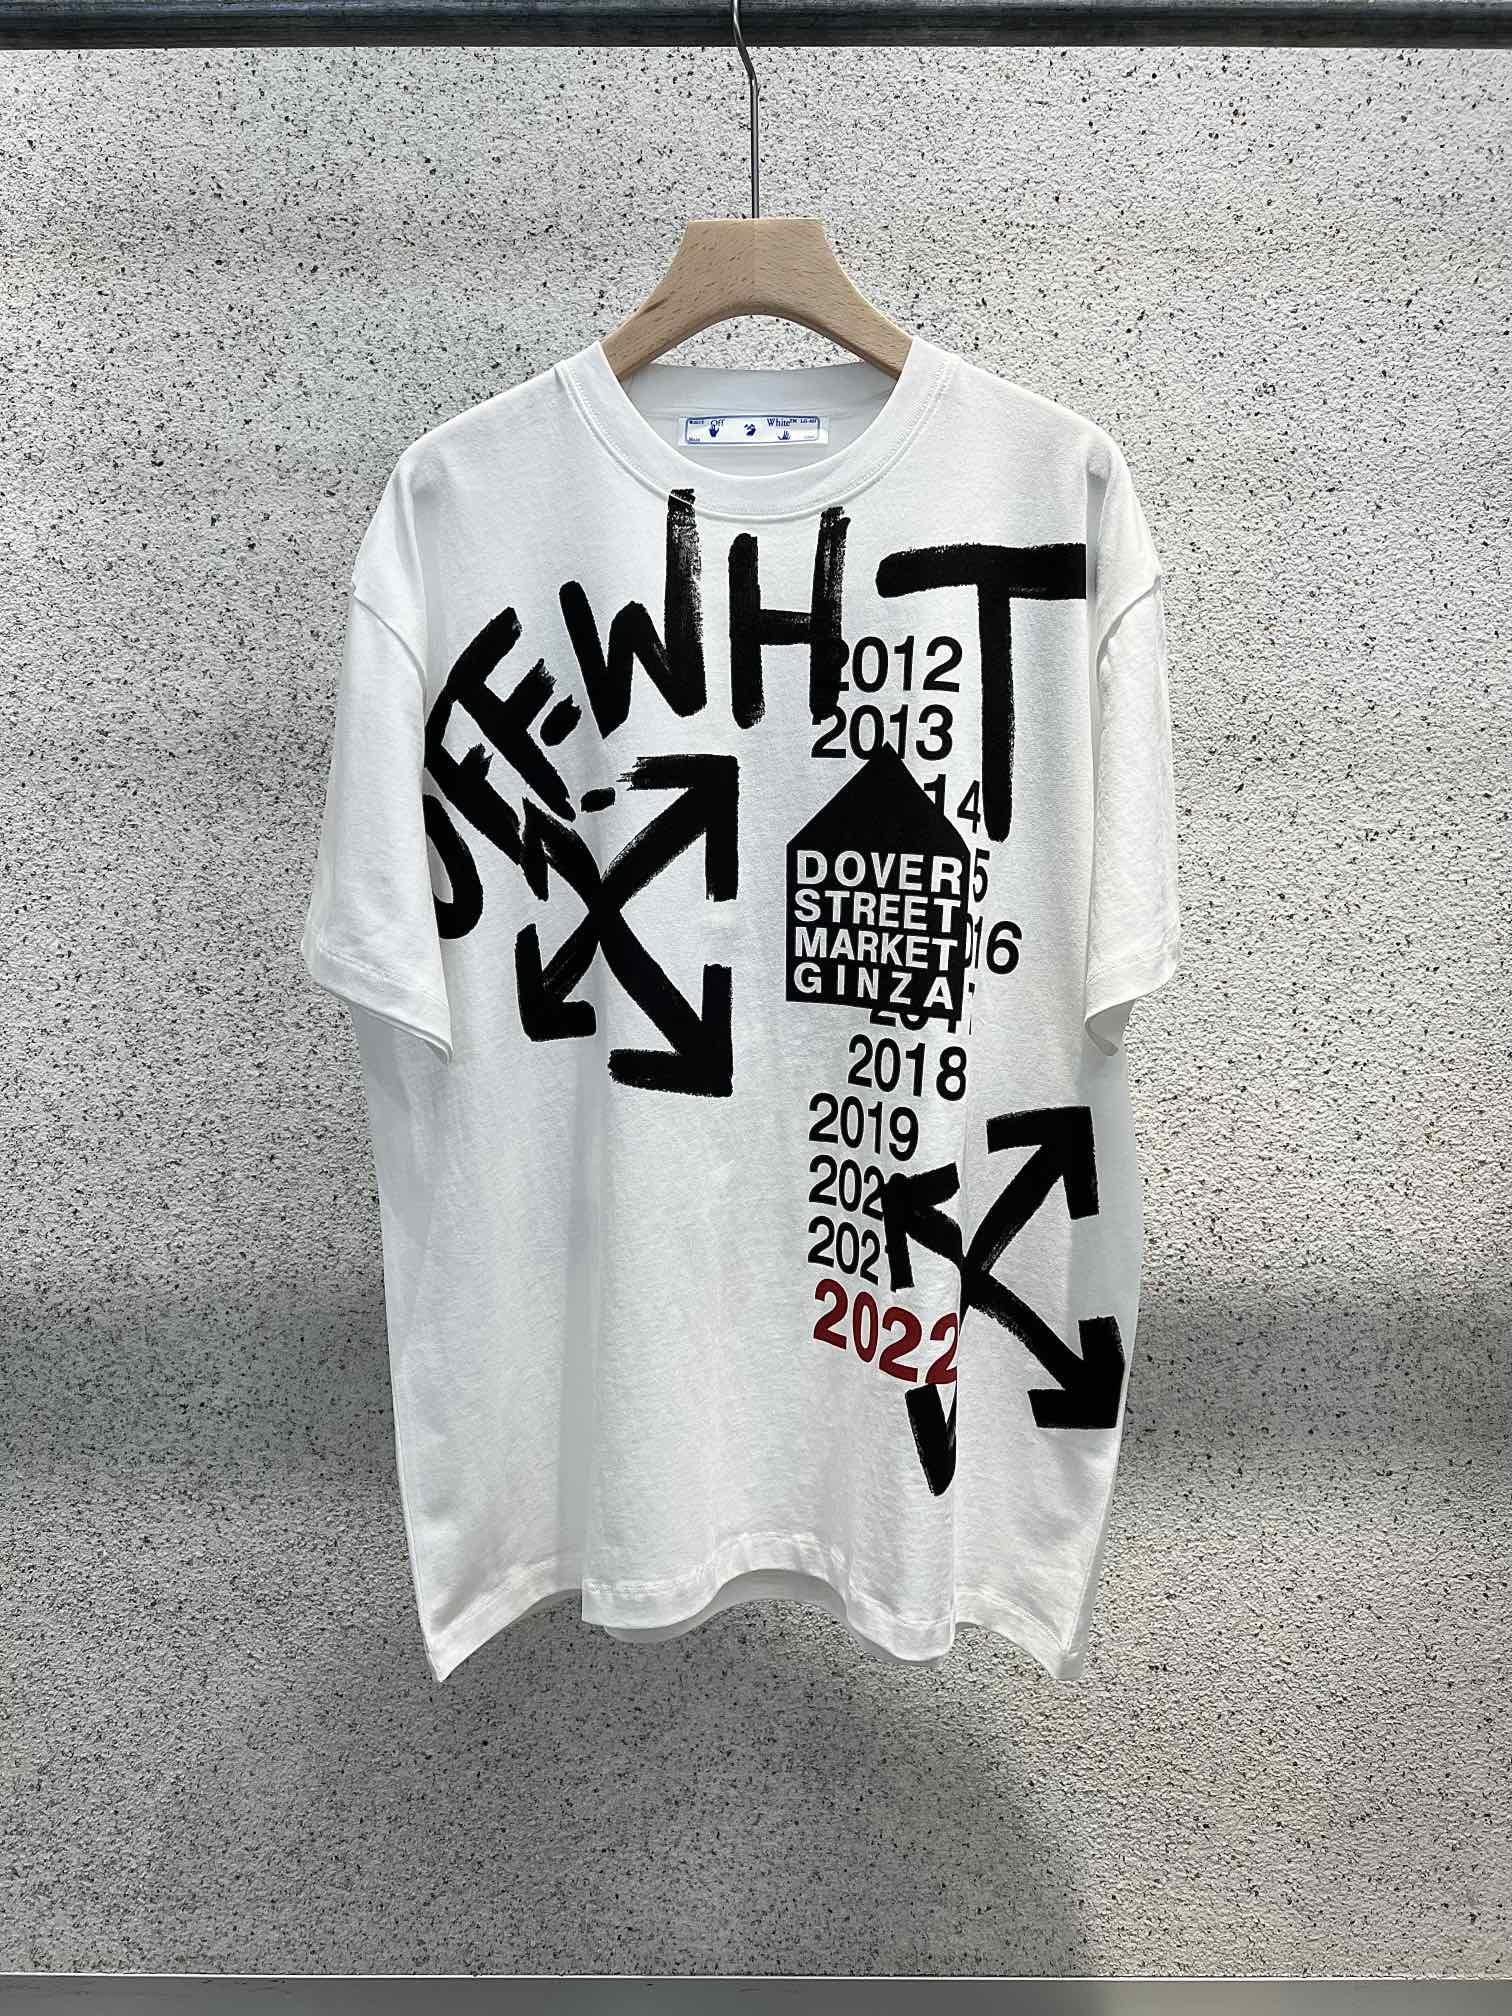 off-white-t-shirt-6950_16845016832-1000